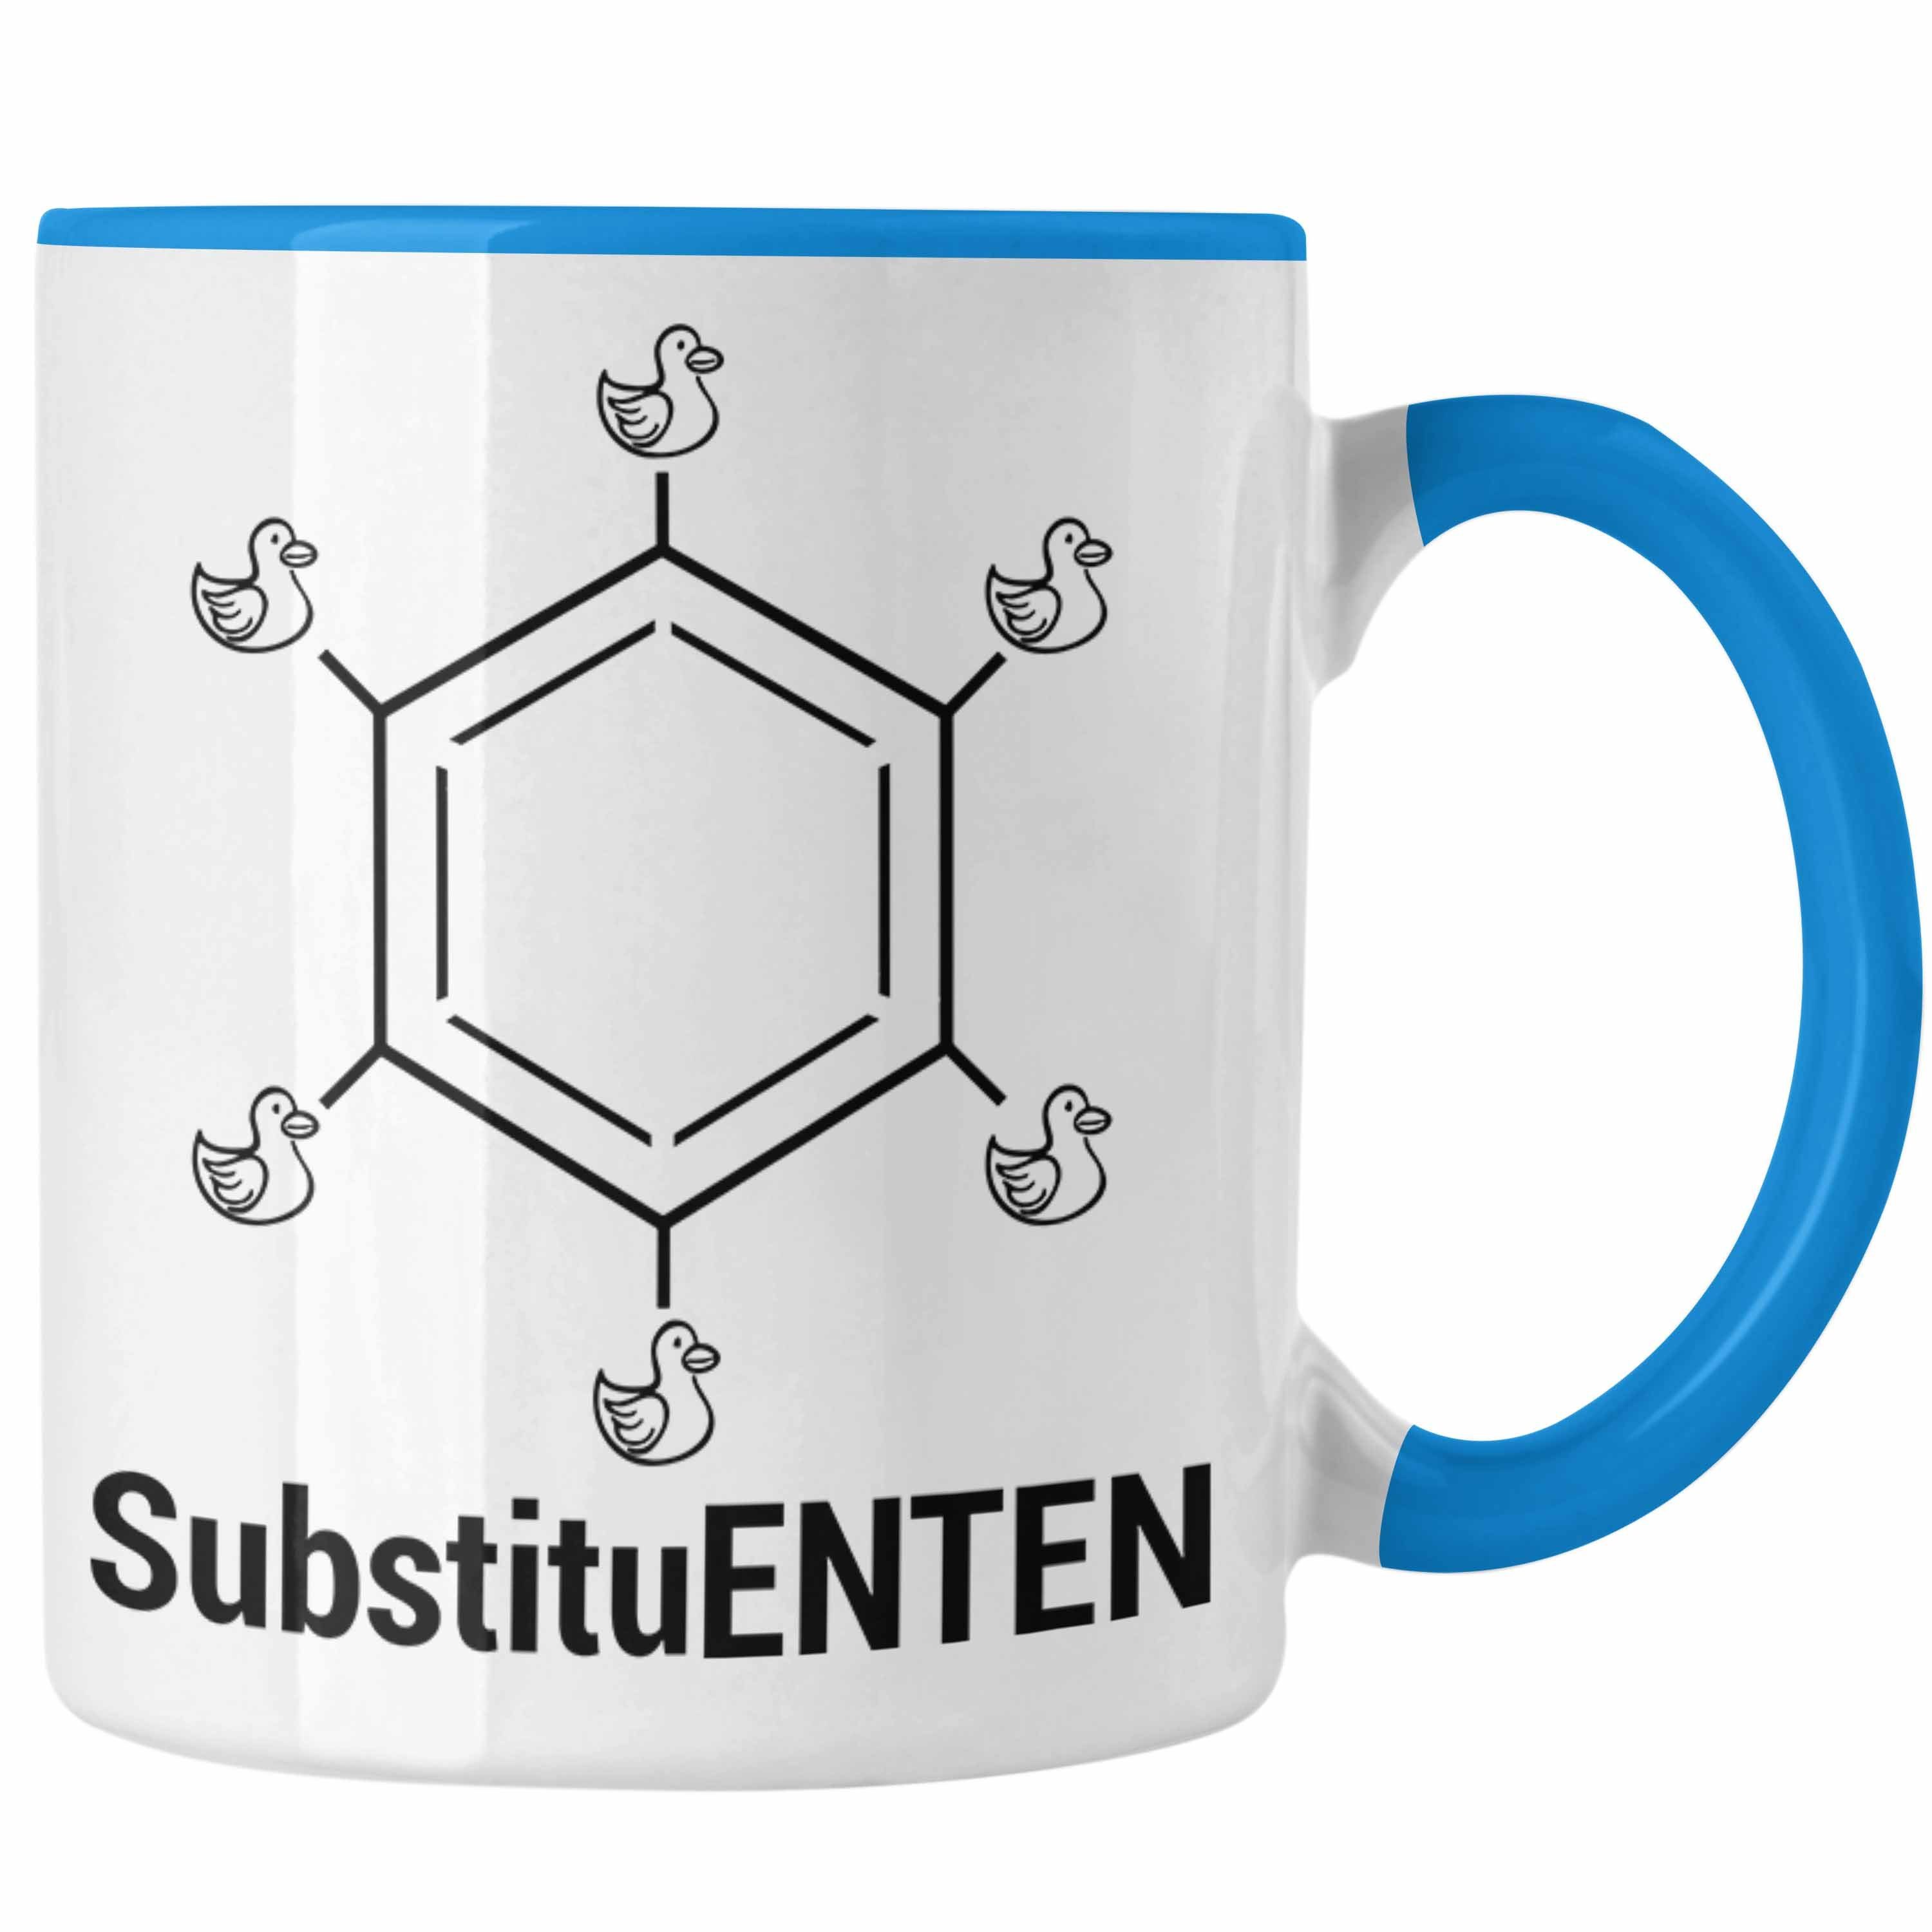 Trendation Tasse Chemie Tasse SubstituENTEN Chemiker Witz Organische Chemie Ente Kaffee Blau